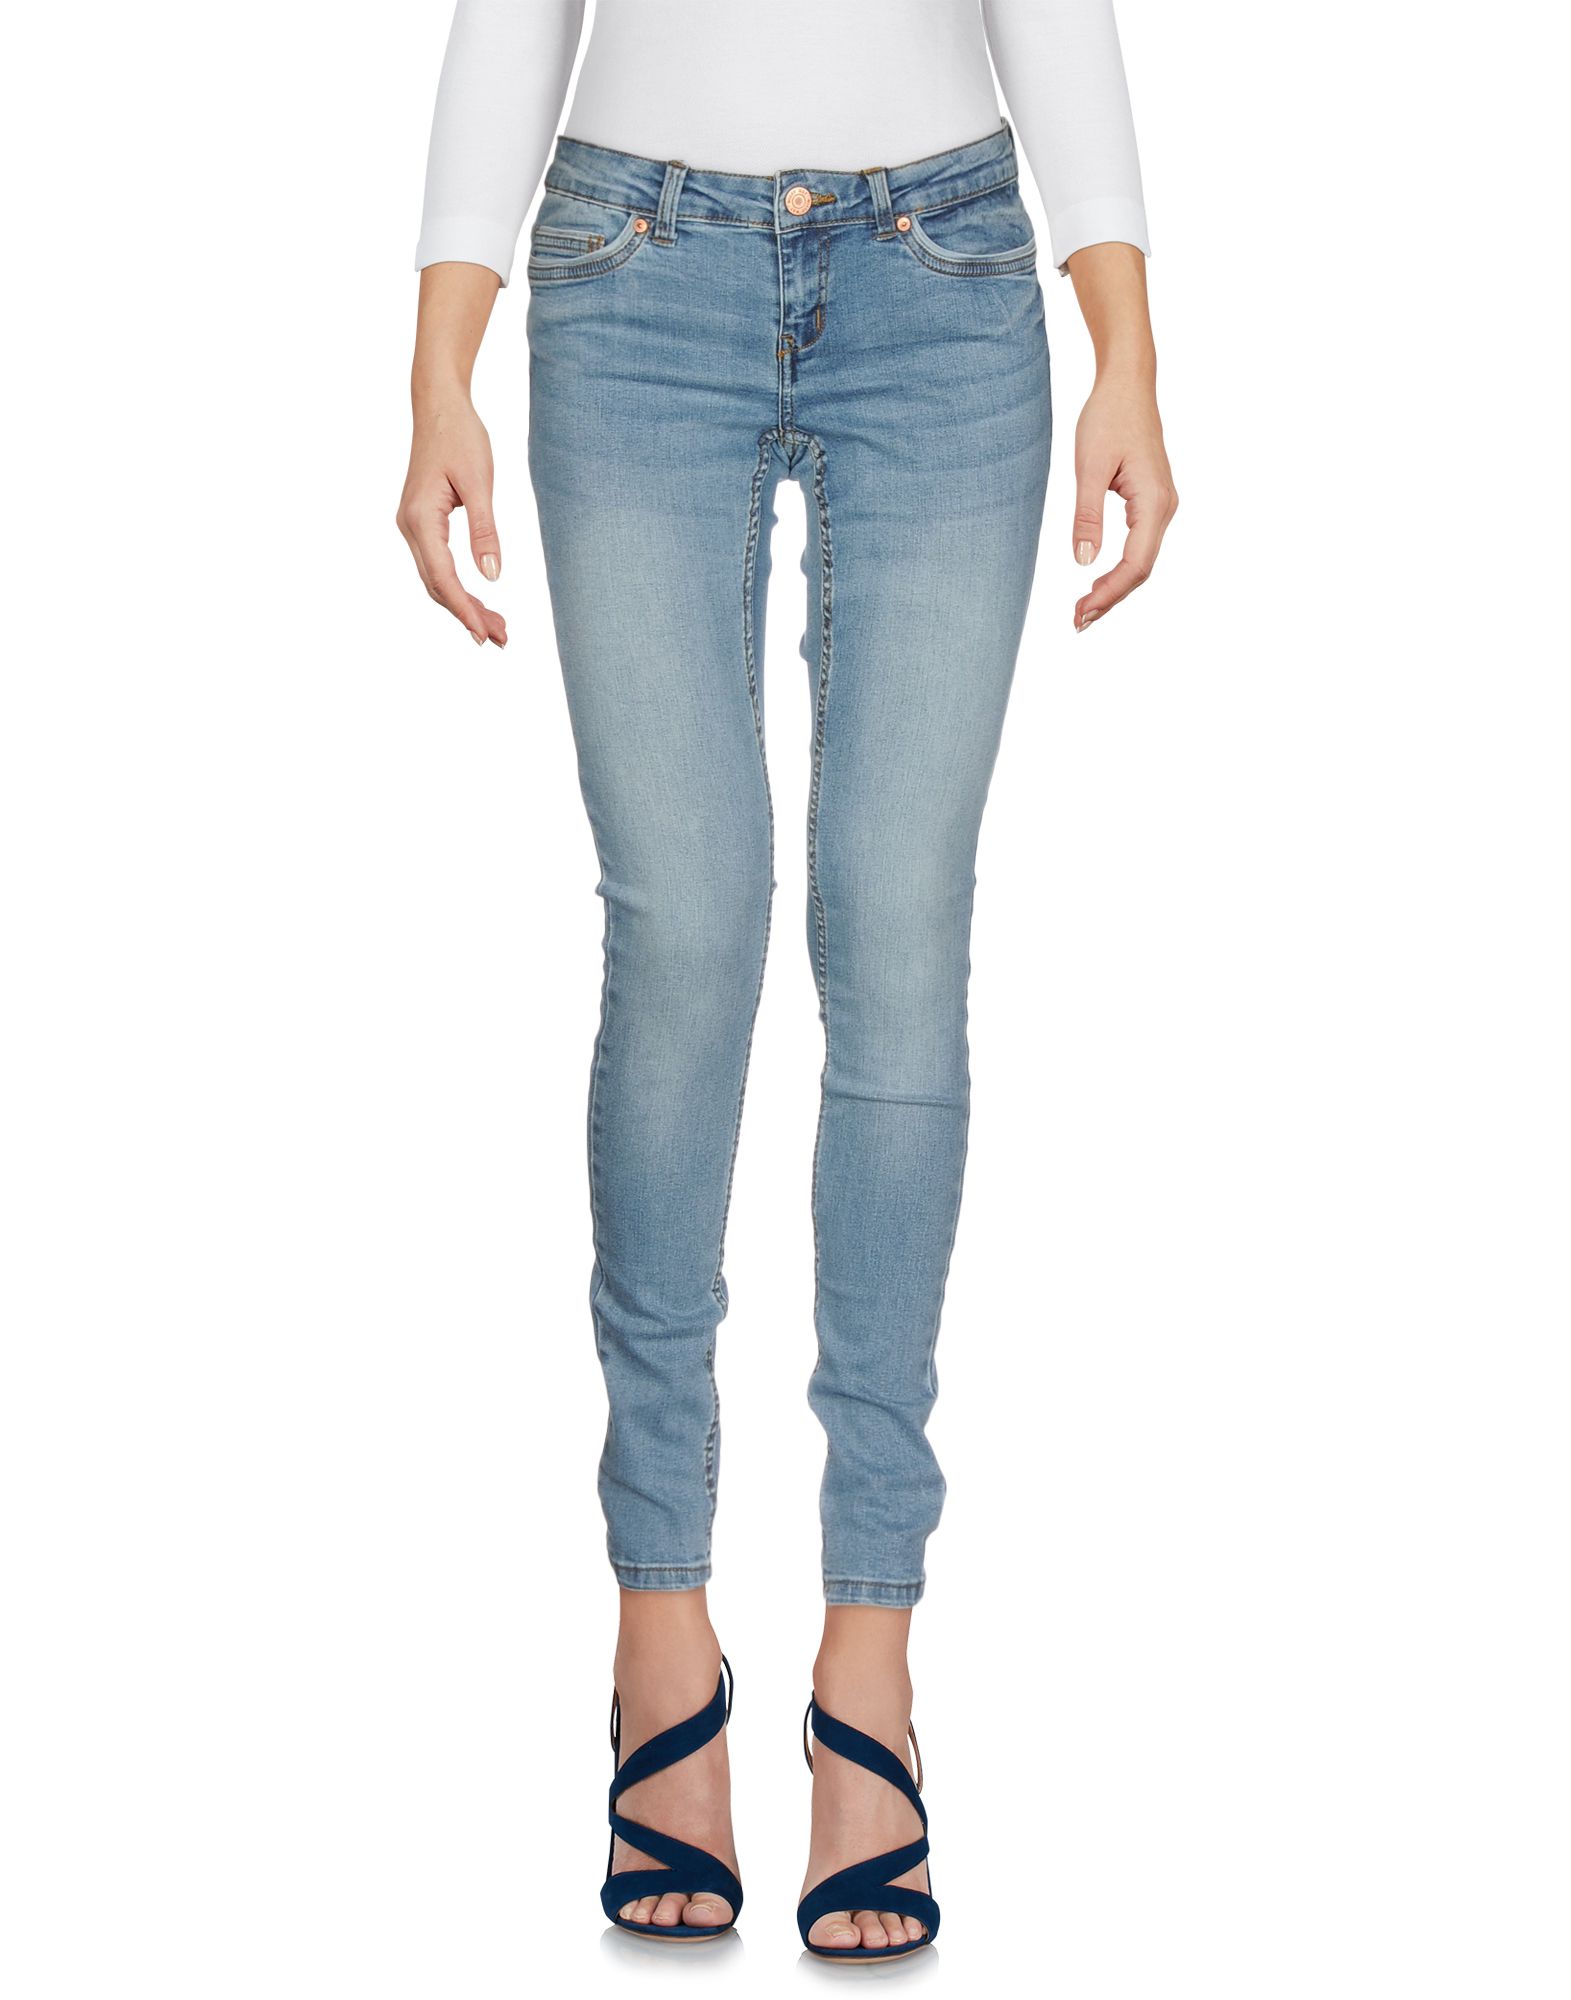 Джинсы май. Штаны джинсы верхняя одежда. 20нче май – джинсы чалбары көне.